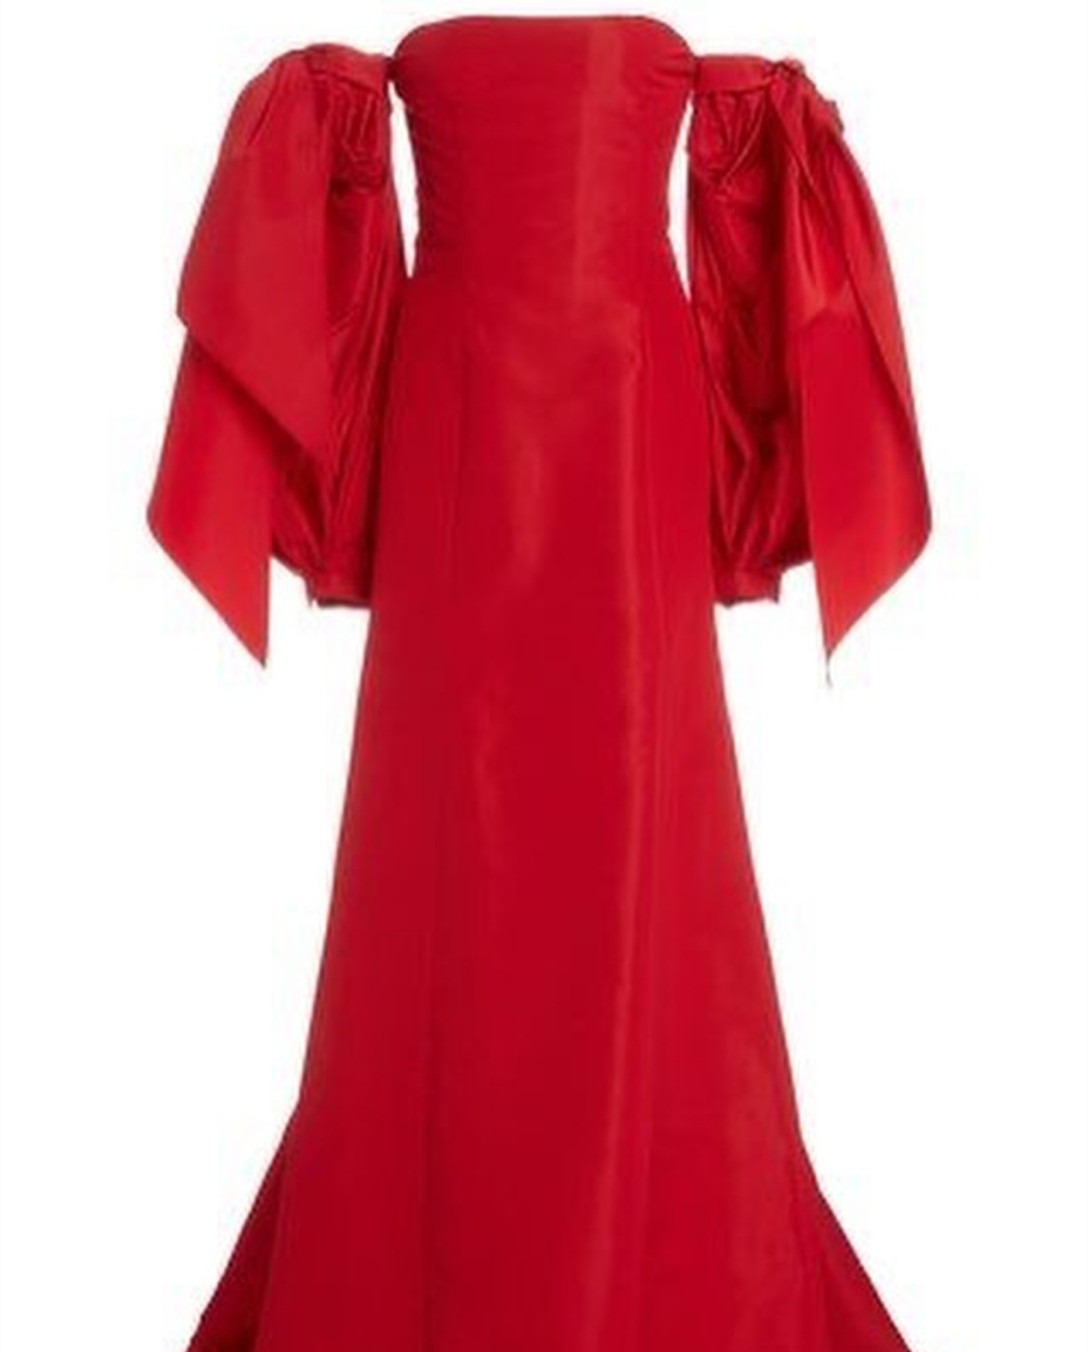 Robe de bal longue rouge sans bretelles, style sirène, en taffetas, plissée, sans manches, robe de soirée Maxi formelle pour femmes